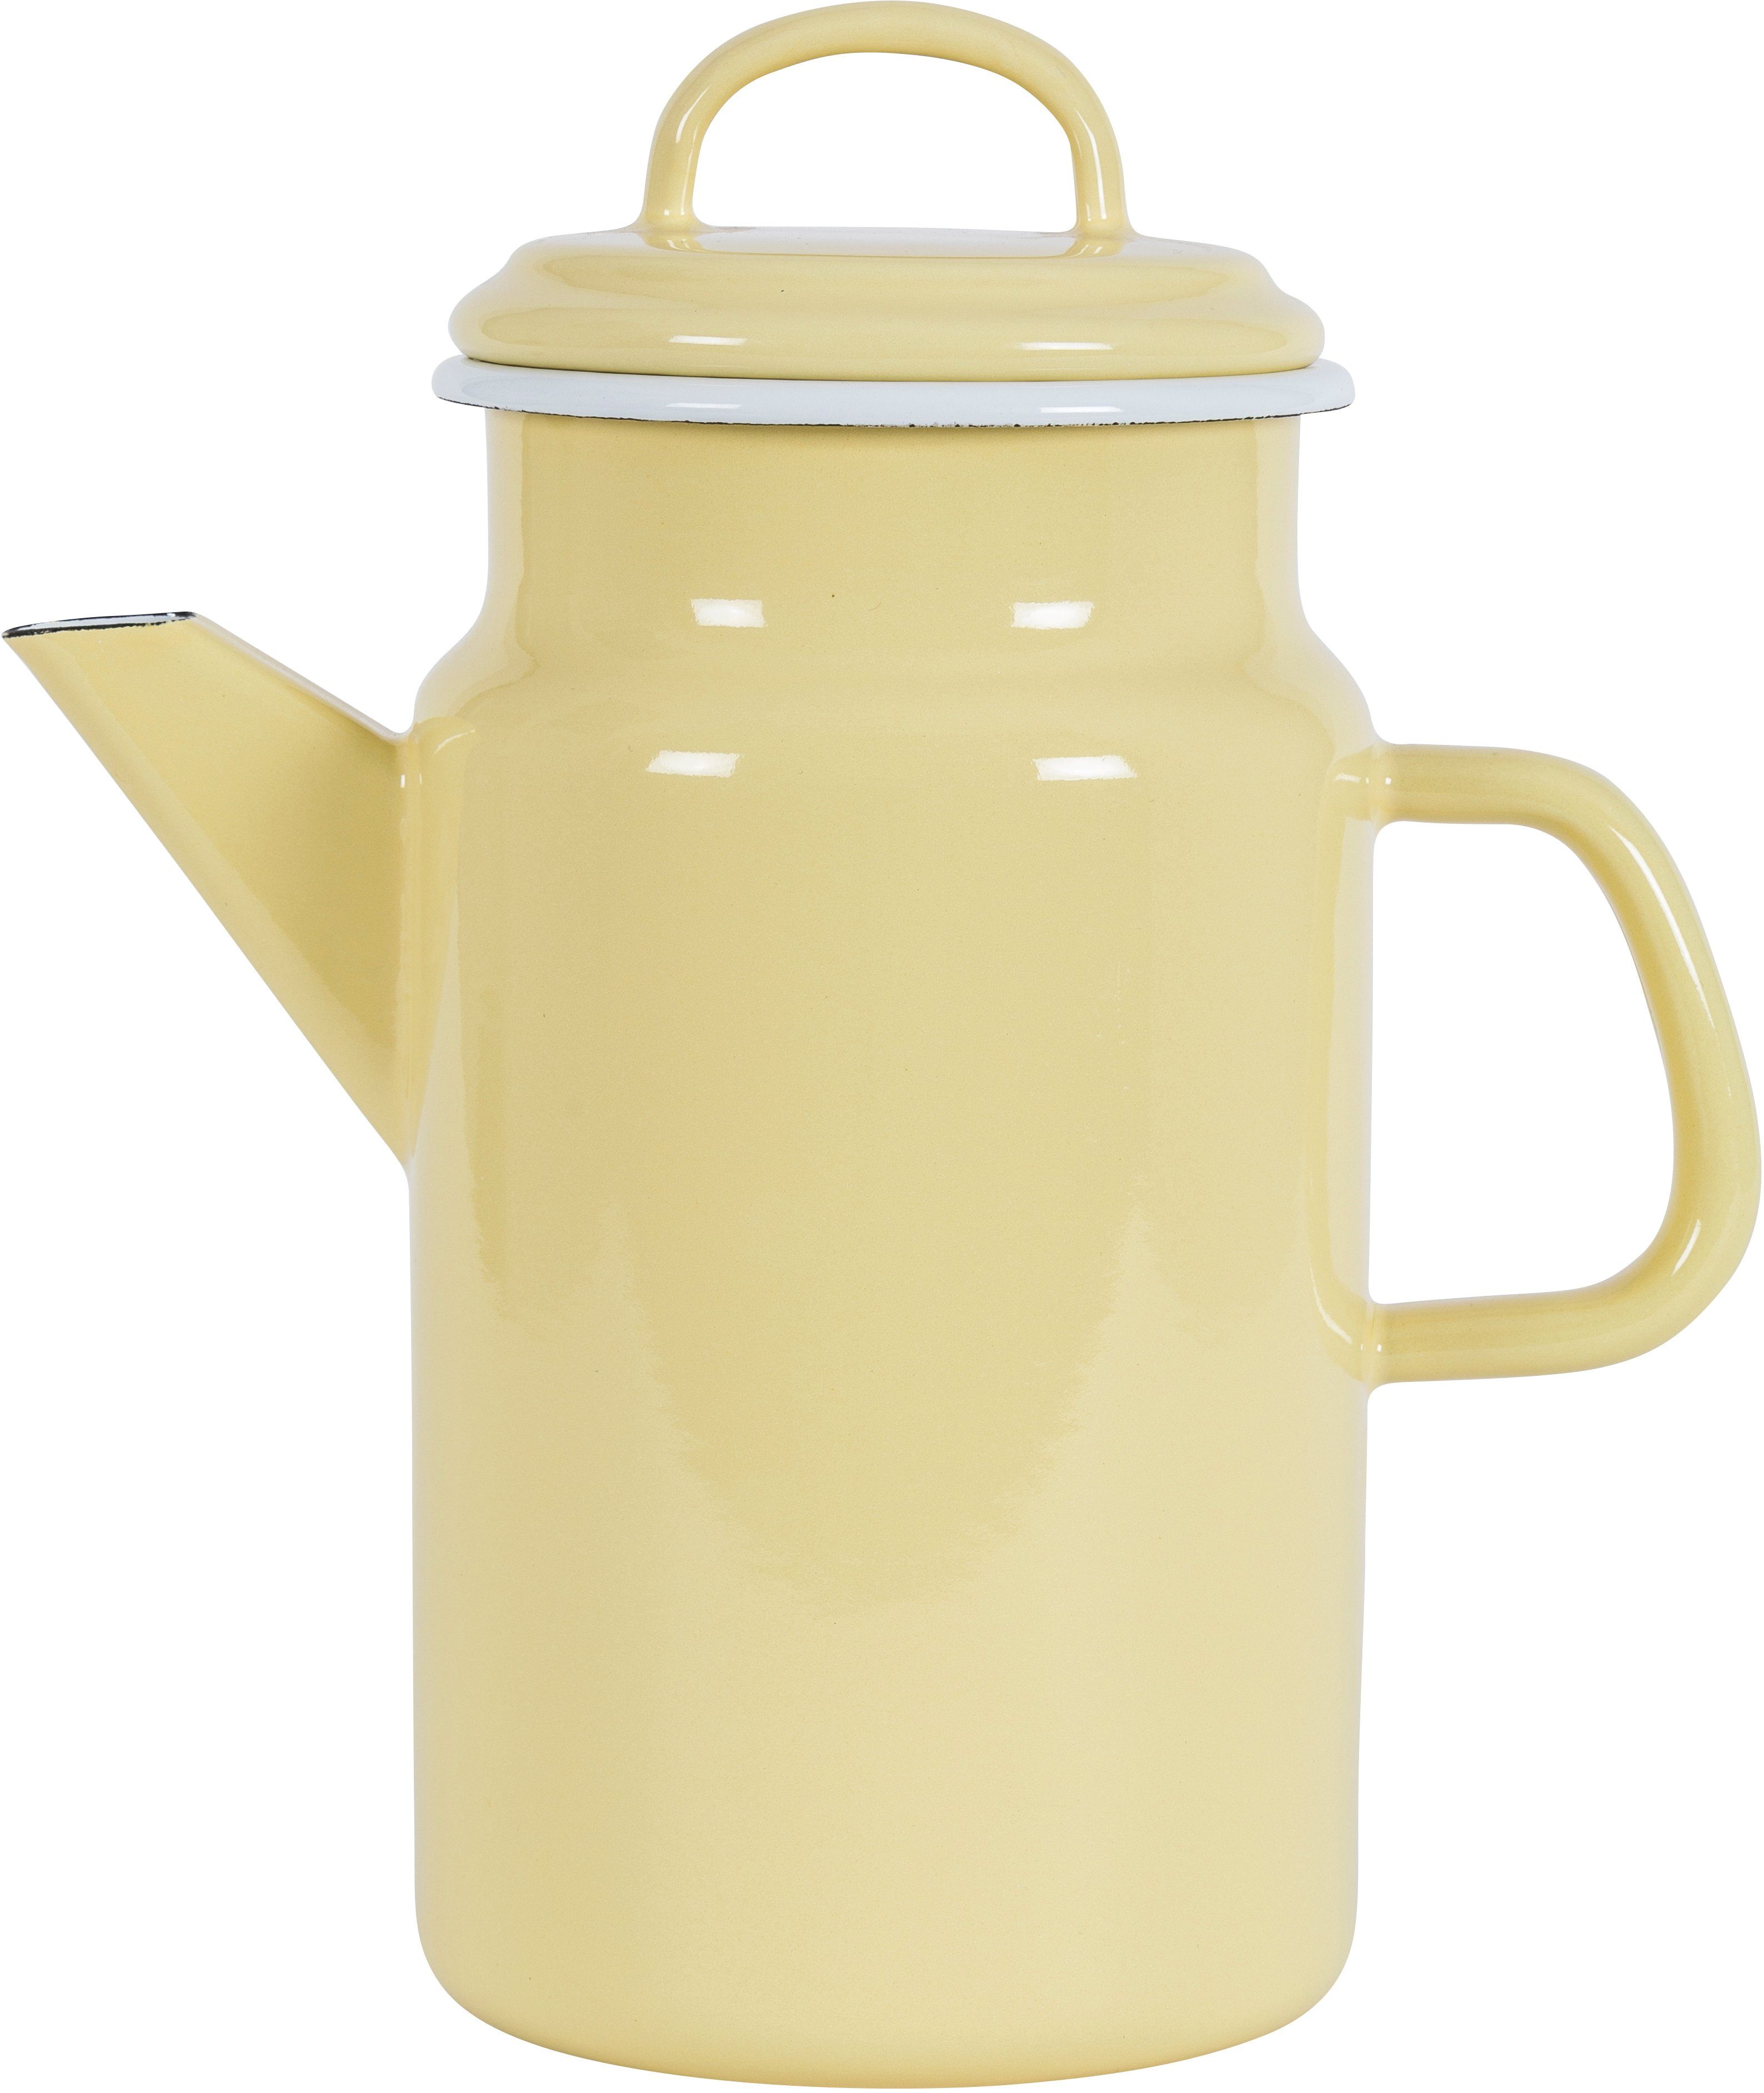 Teekanne gelb in Emaille, vereint Nachhaltigkeit und KOCKUMS® Retro-Design Teekanne einer 2 l, Jernverk,